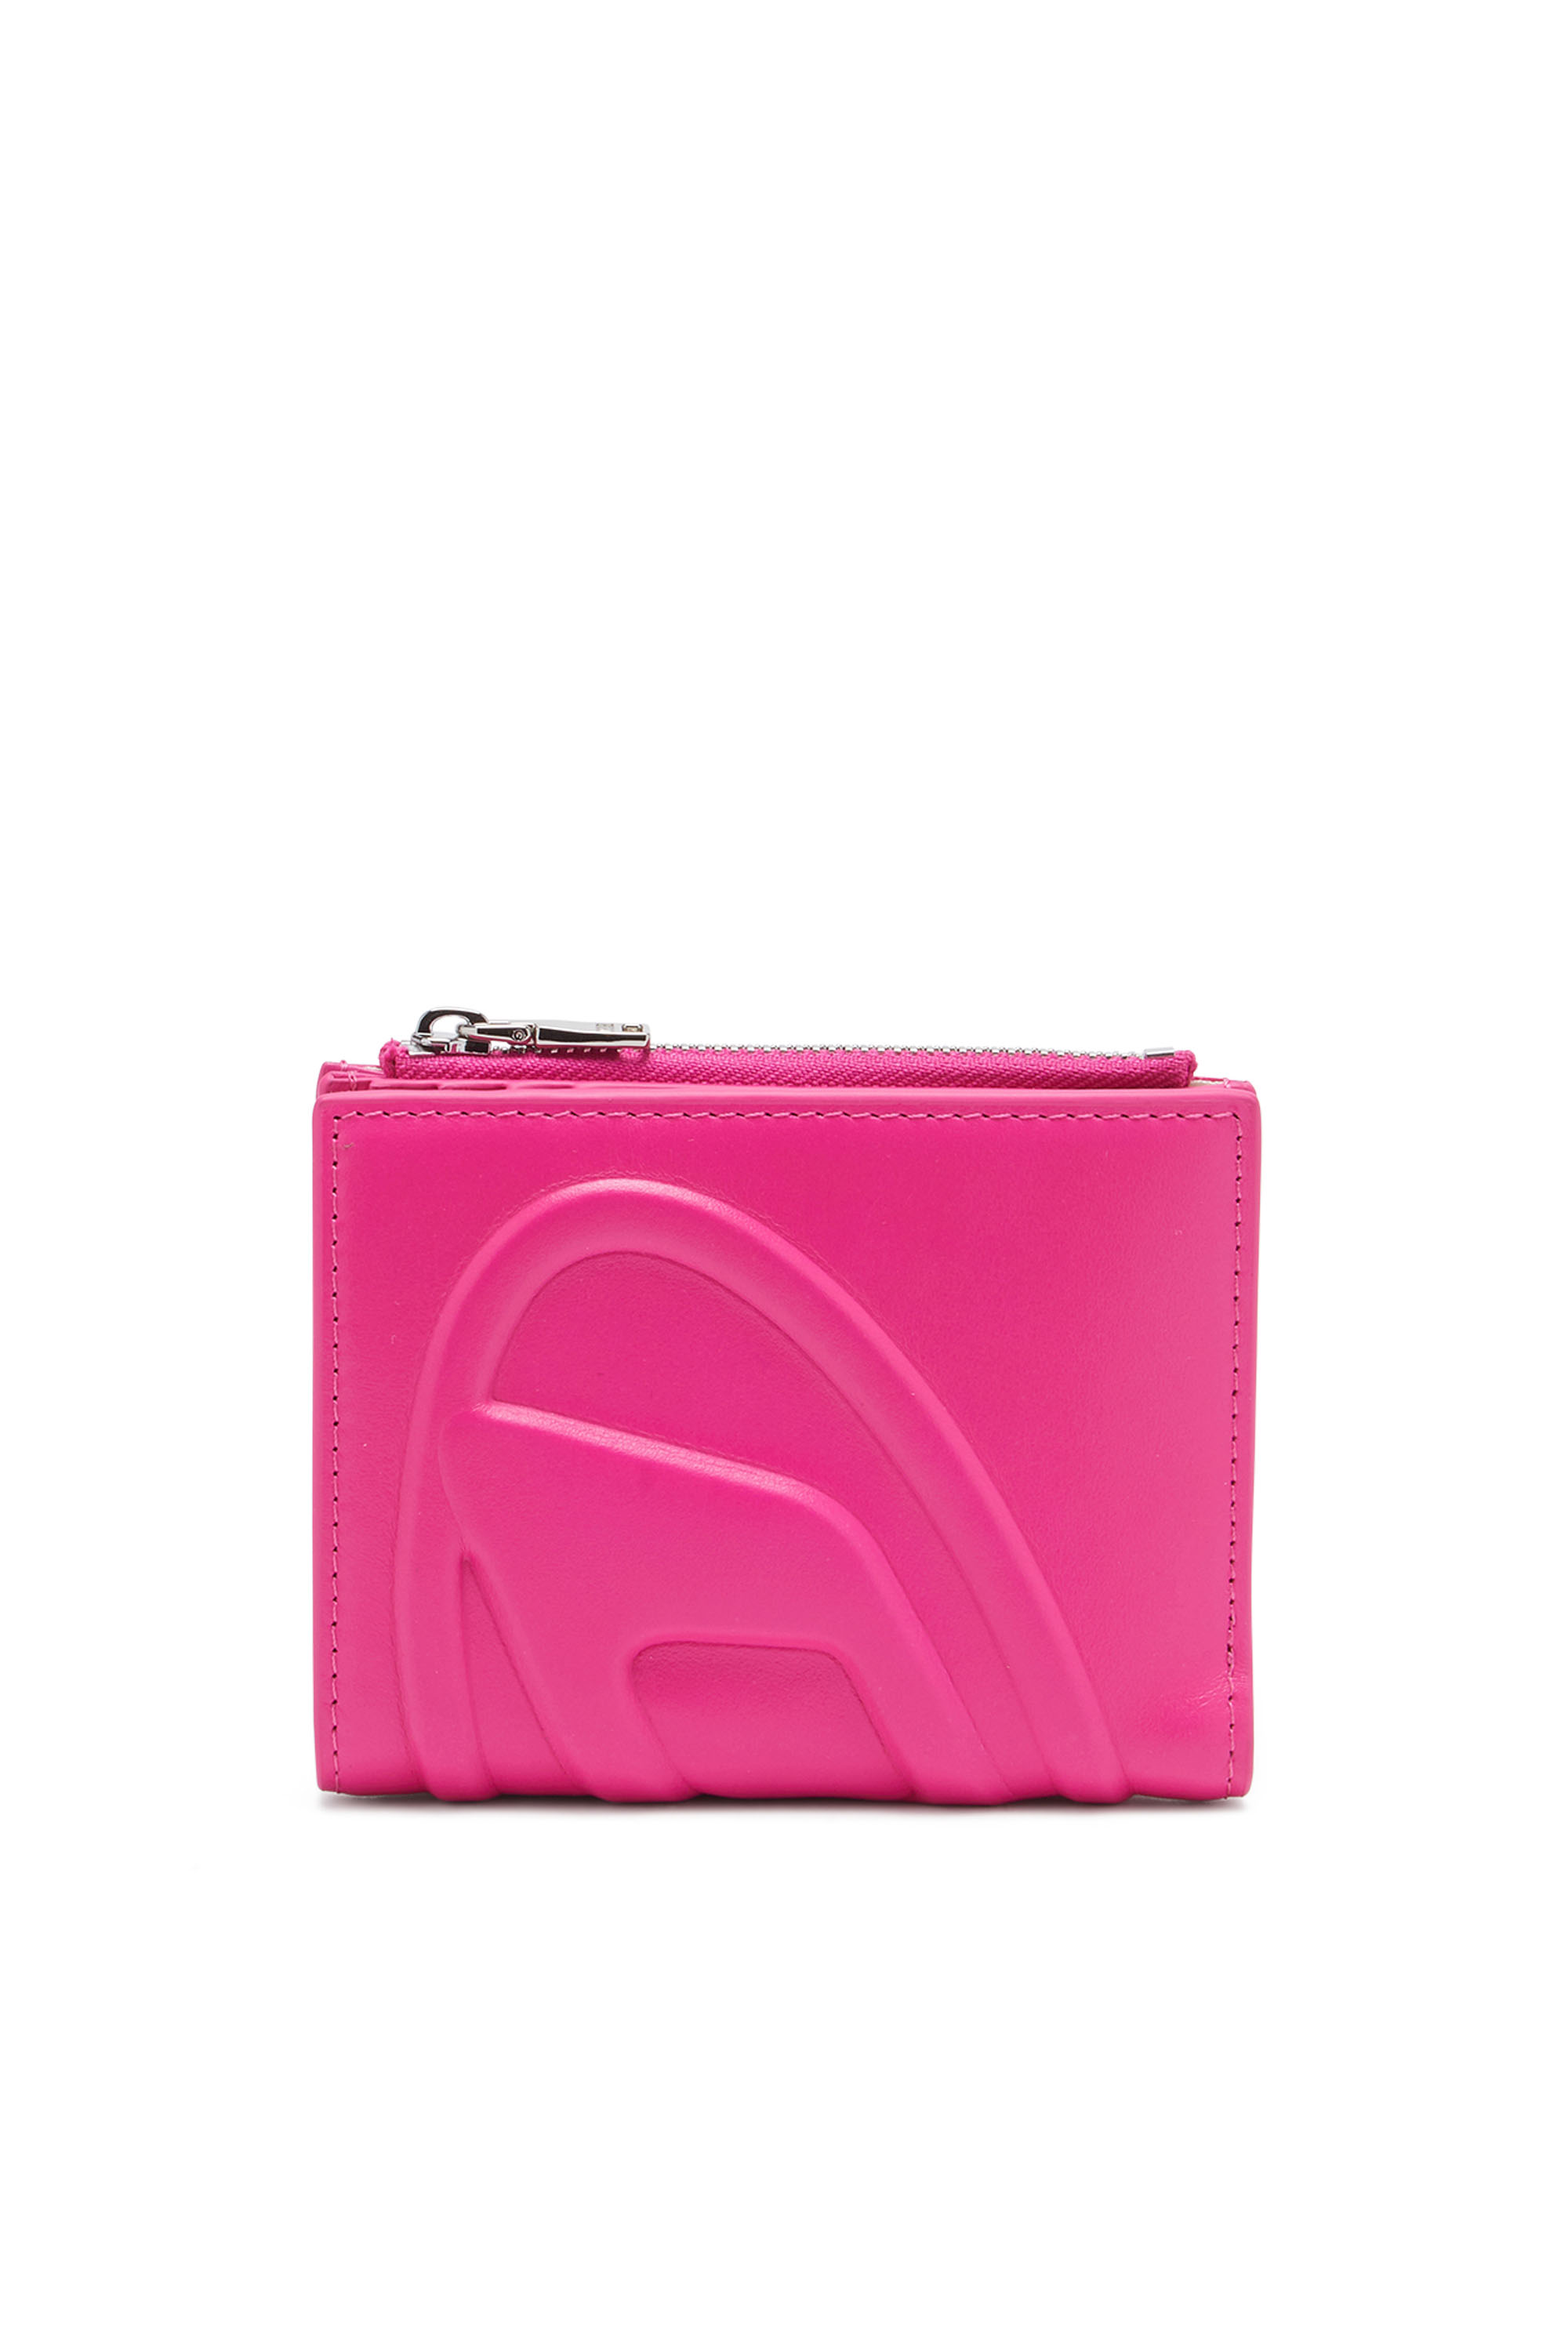 Diesel - Petit portefeuille en cuir avec logo embossé - Petits Portefeuilles - Femme - Rose